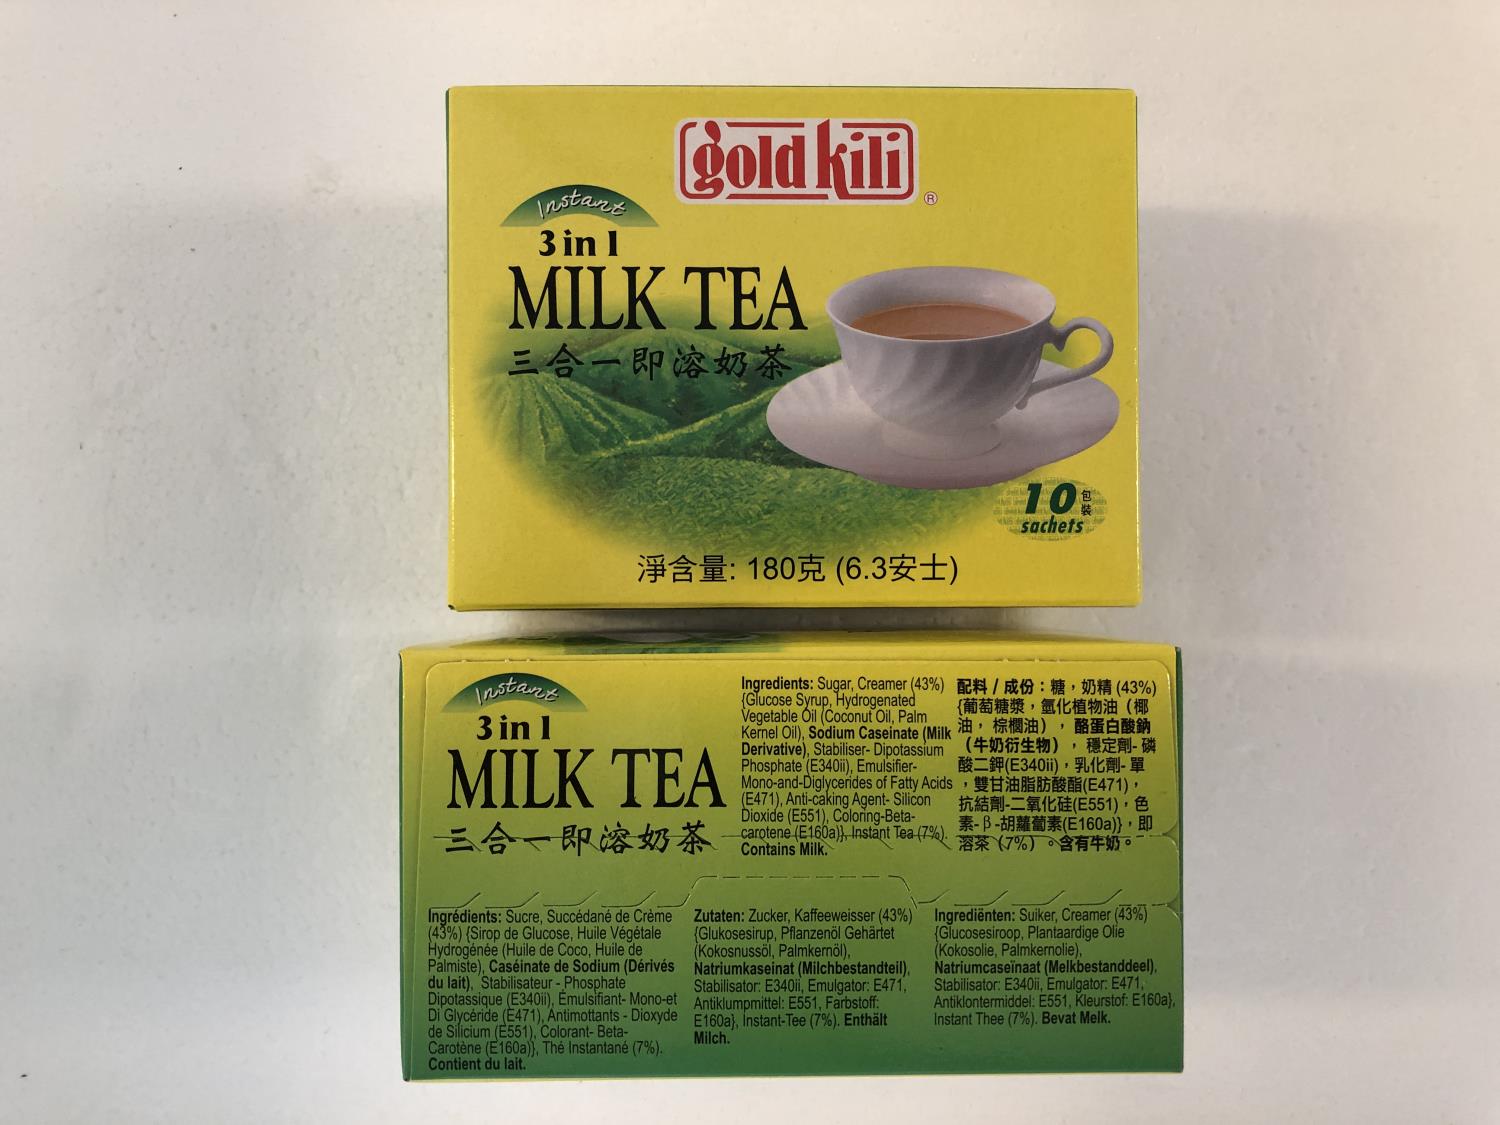 'GOLD KILI 3 in 1 Milk Tea 180g